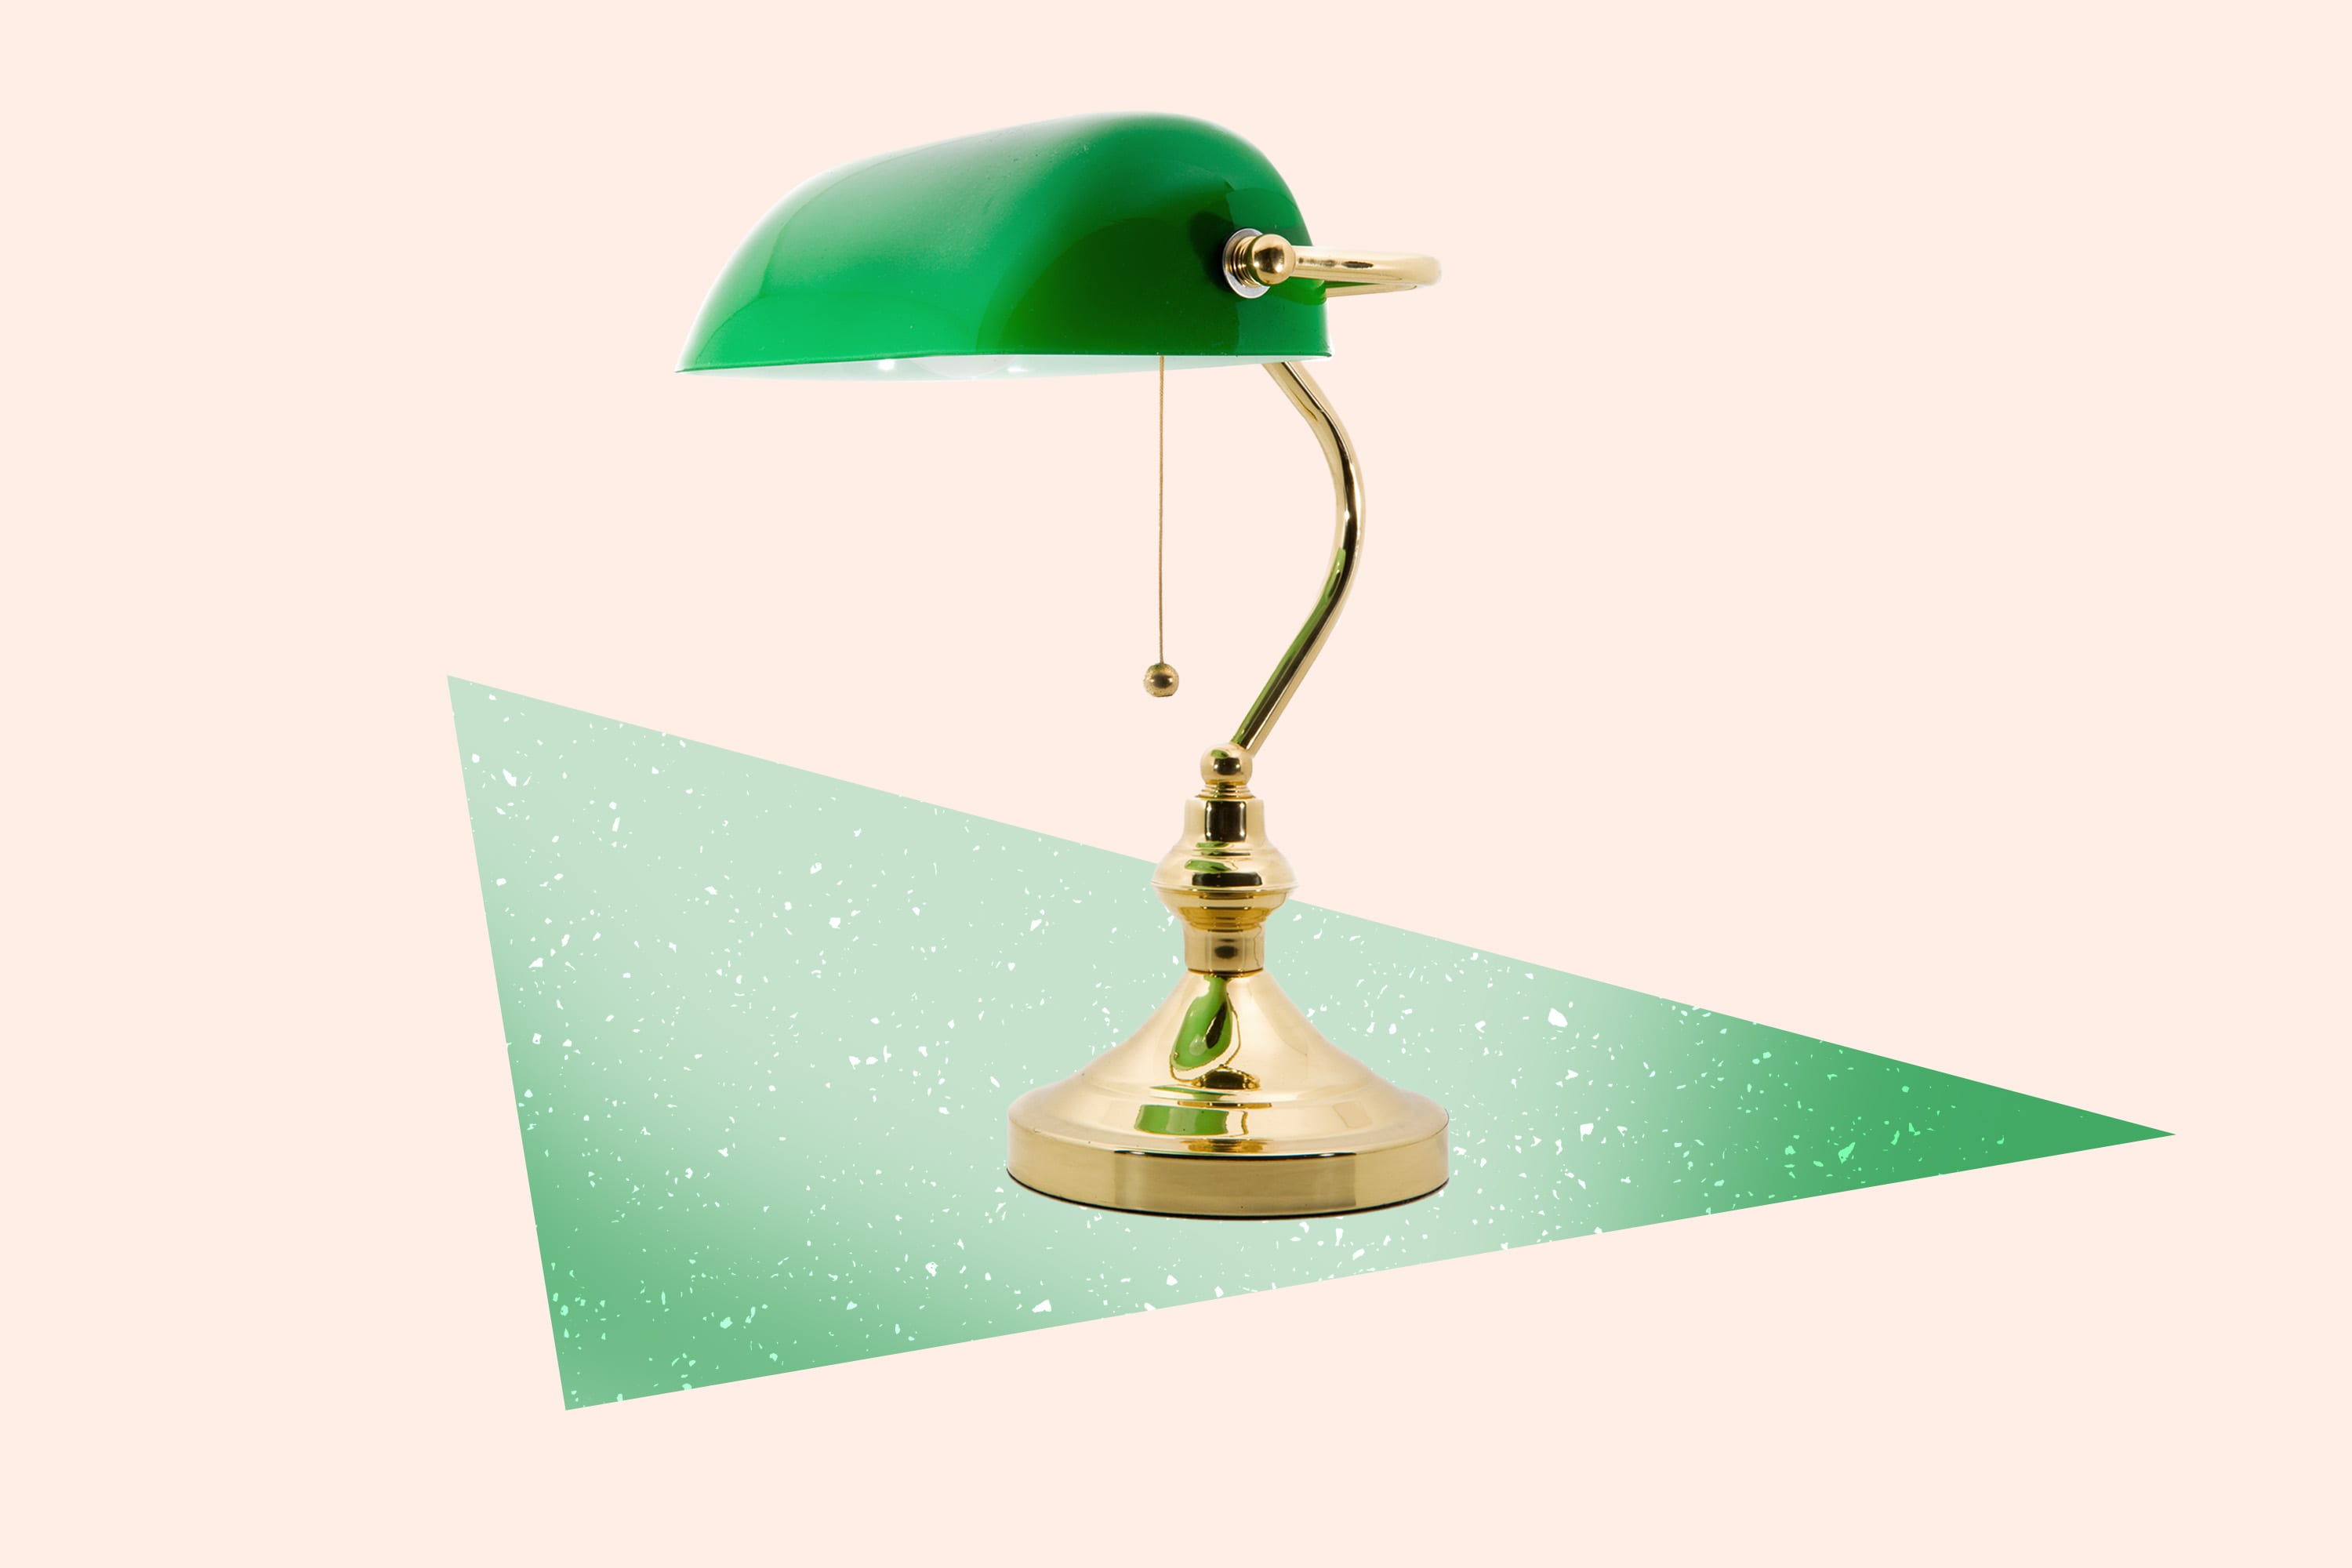 Грин зеленые лампы. Зелёная лампа Грин. Зелёная лампа Грин иллюстрации. Джон Ив зеленая лампа. Гринин зеленая лампа.